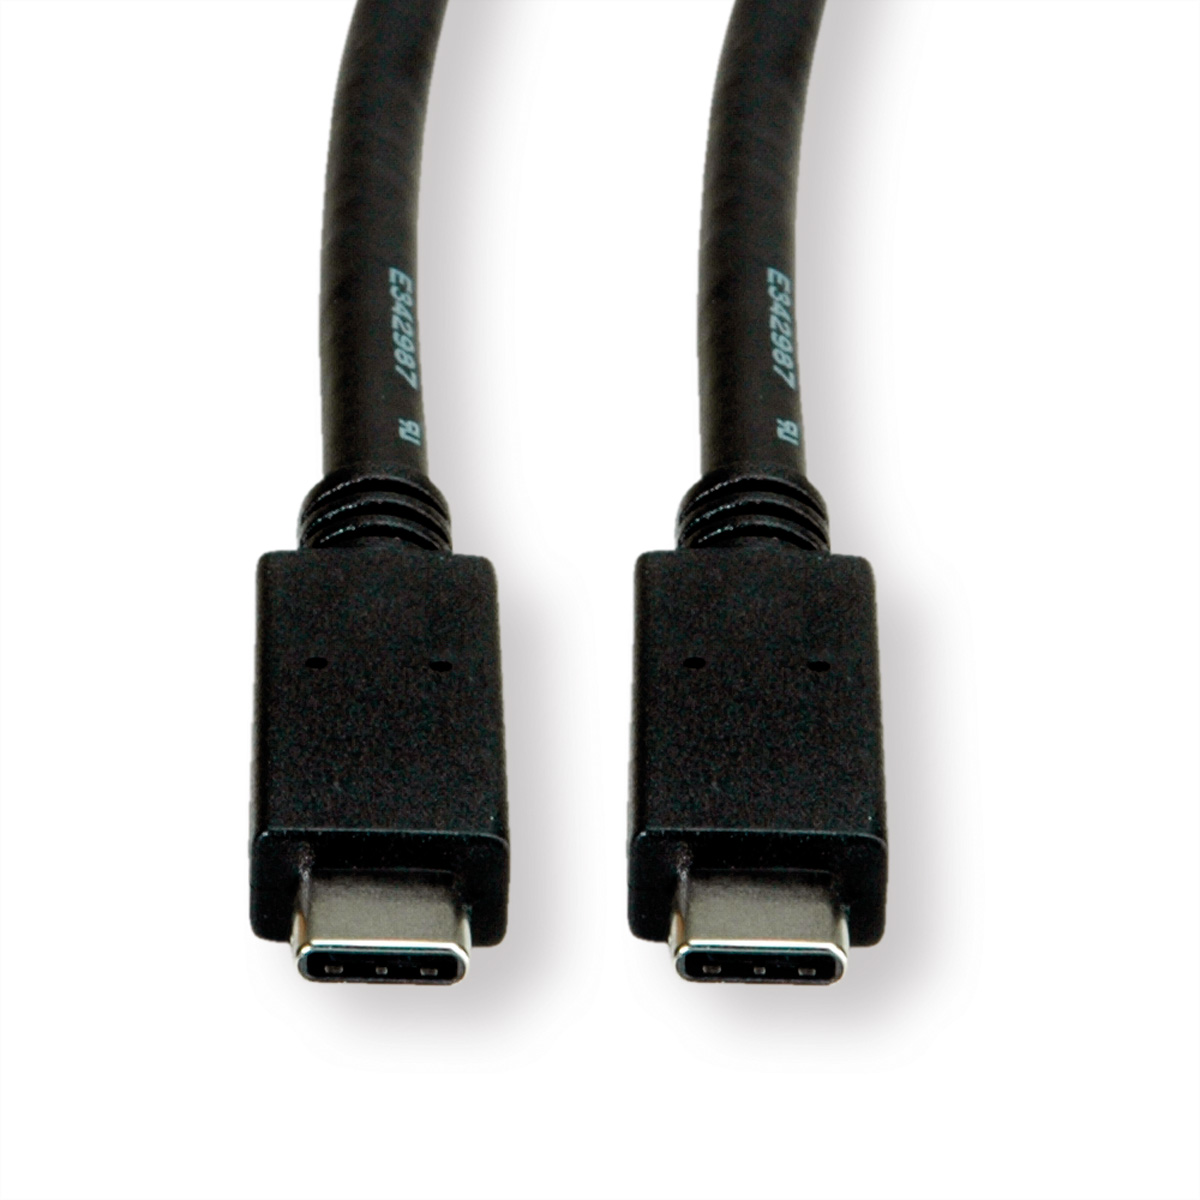 3.2 ST/ST ROLINE C-C, USB 3.2 GREEN Kabel 2 USB Gen Kabel,